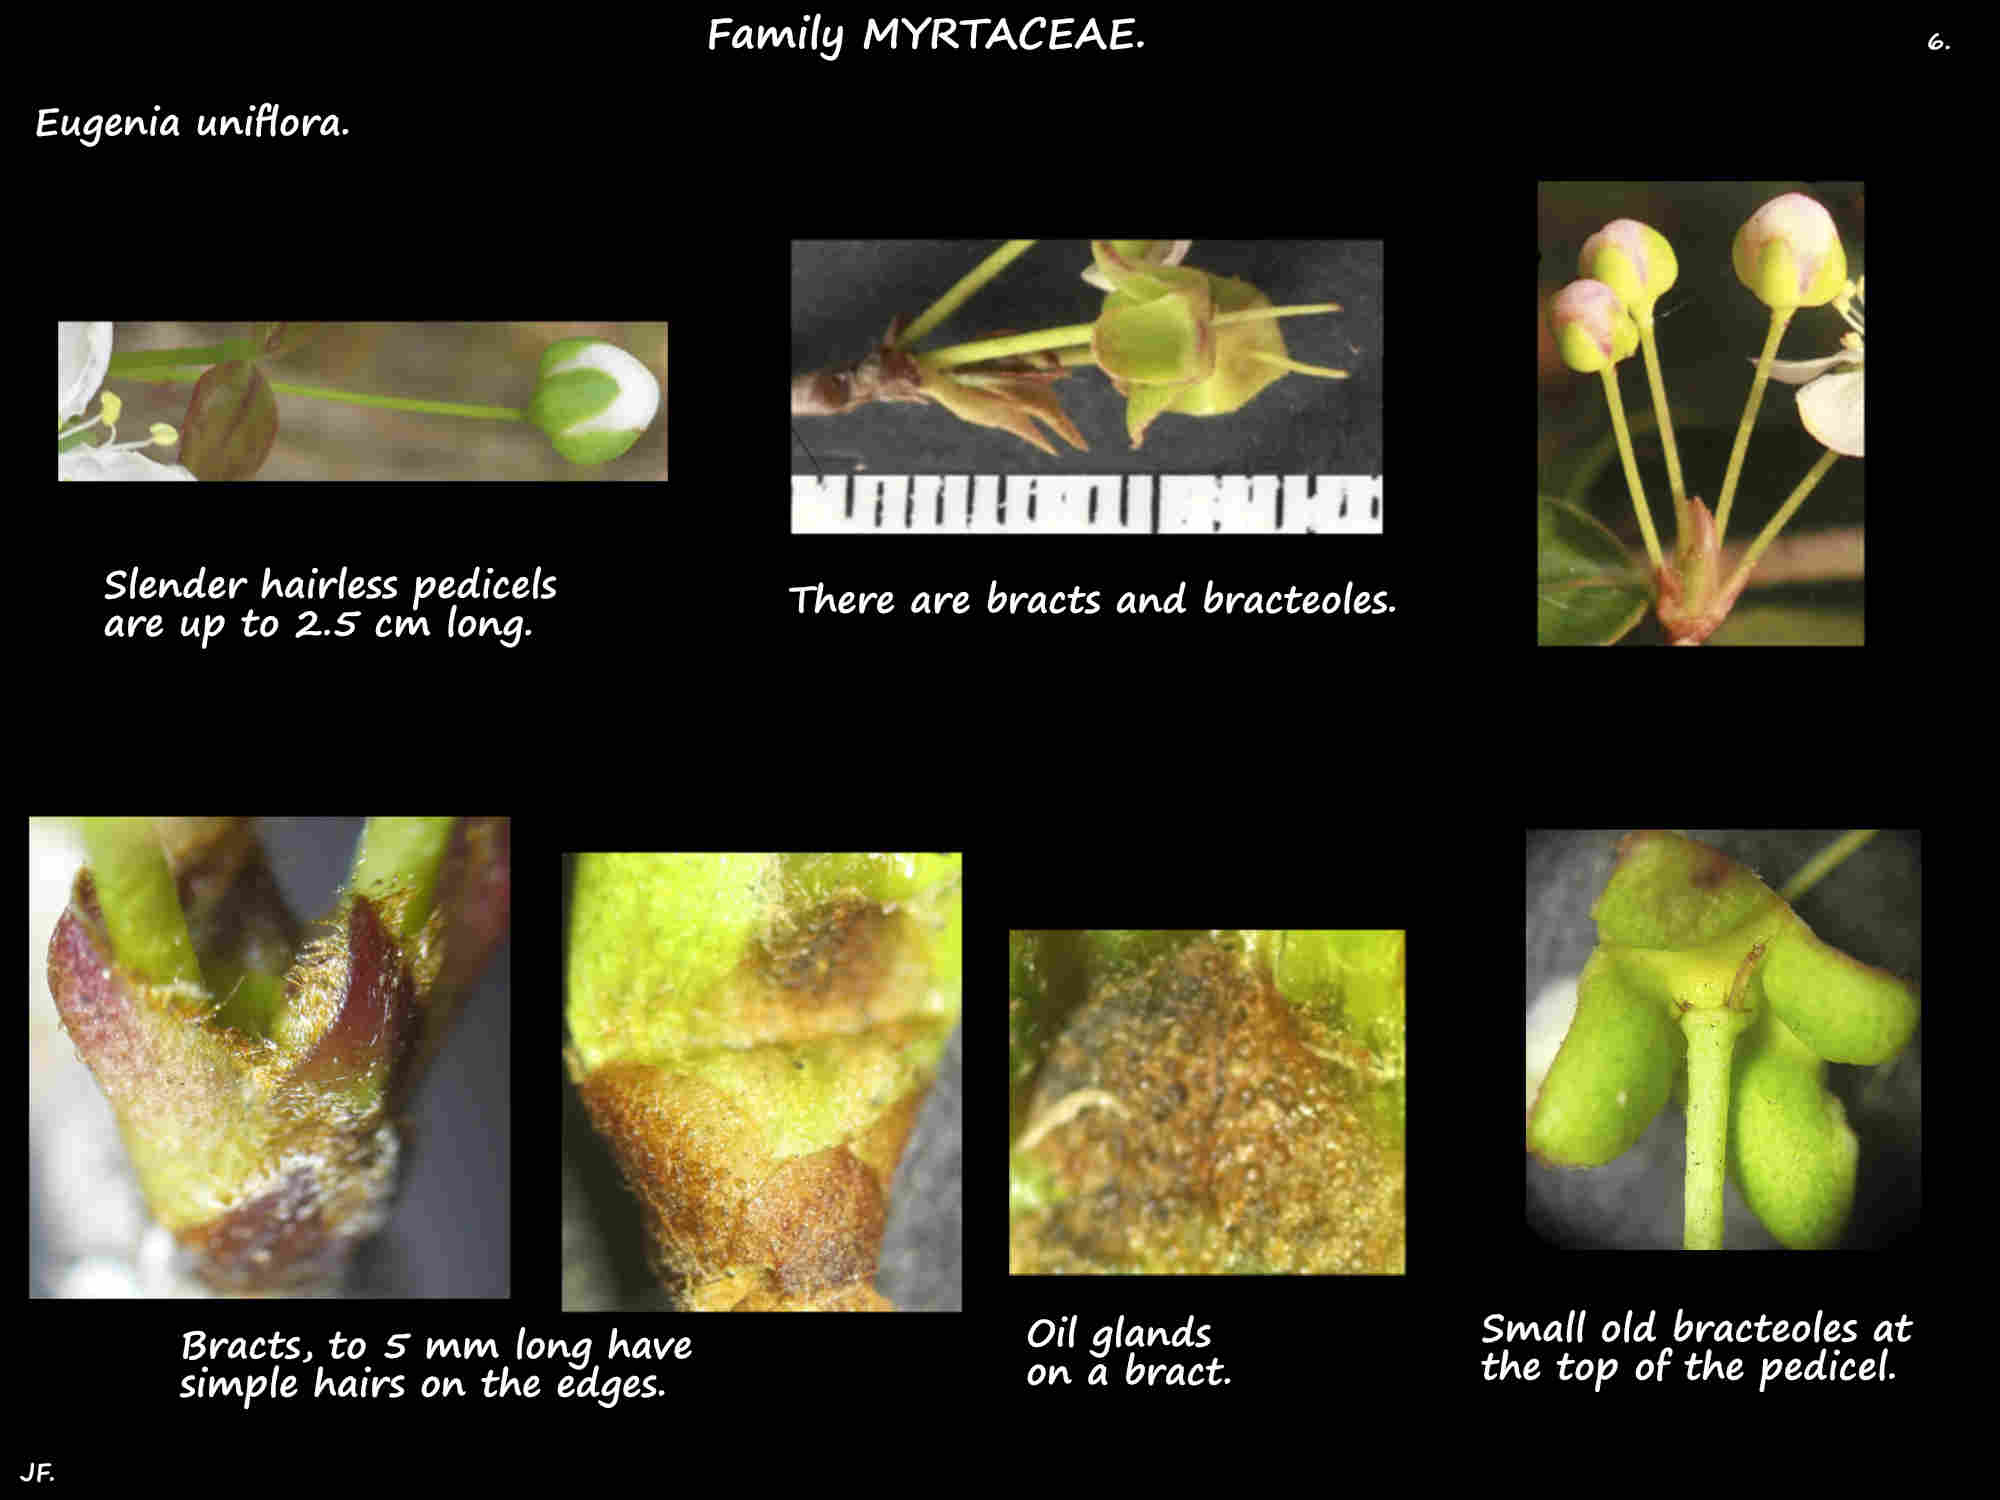 6 Eugenia uniflora bracts & bracteoles